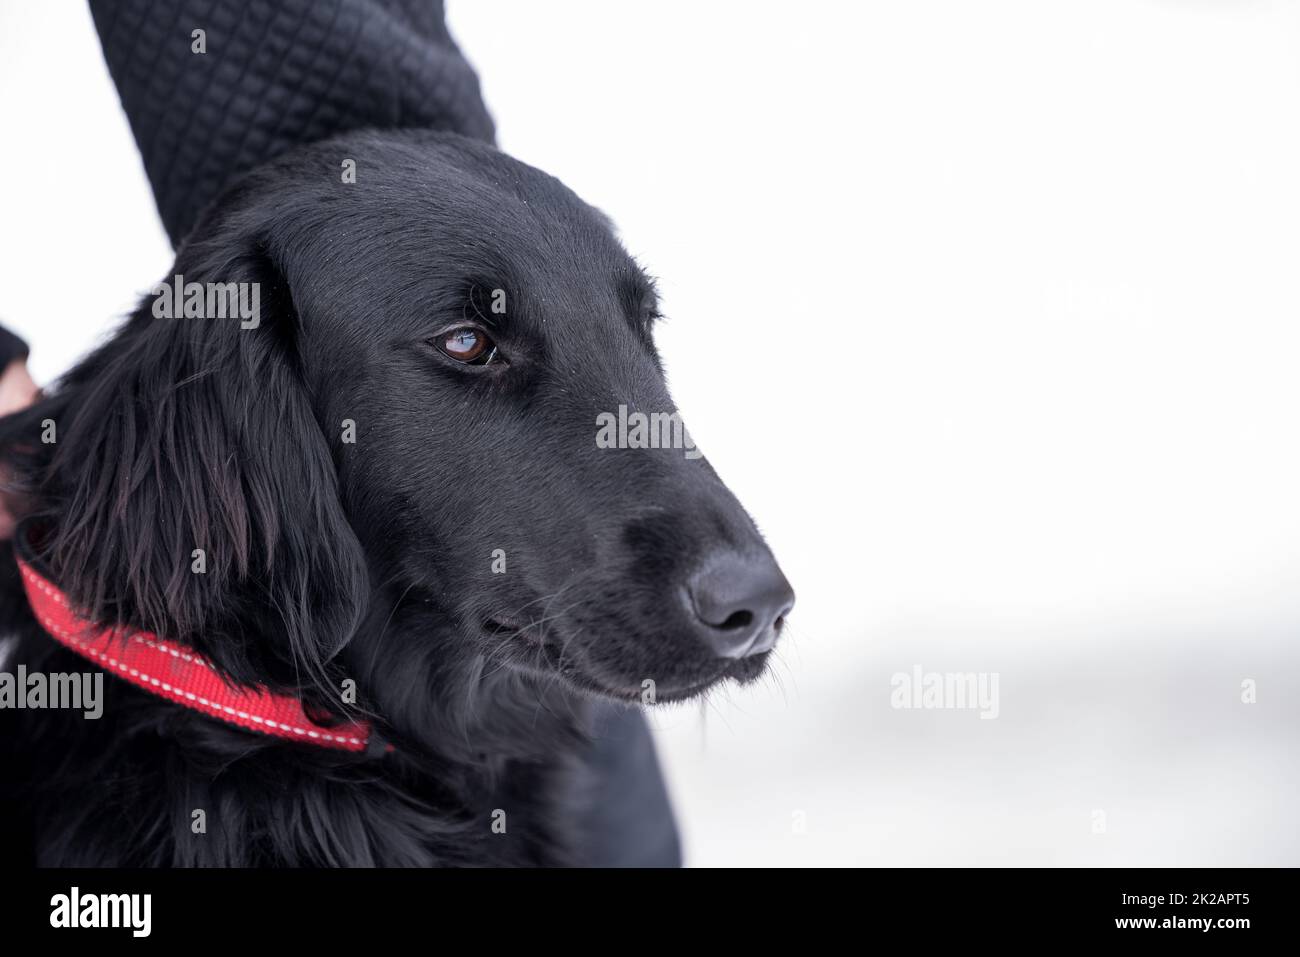 British dog breed - black flat-coated retriever, dog portrait, family pet Stock Photo